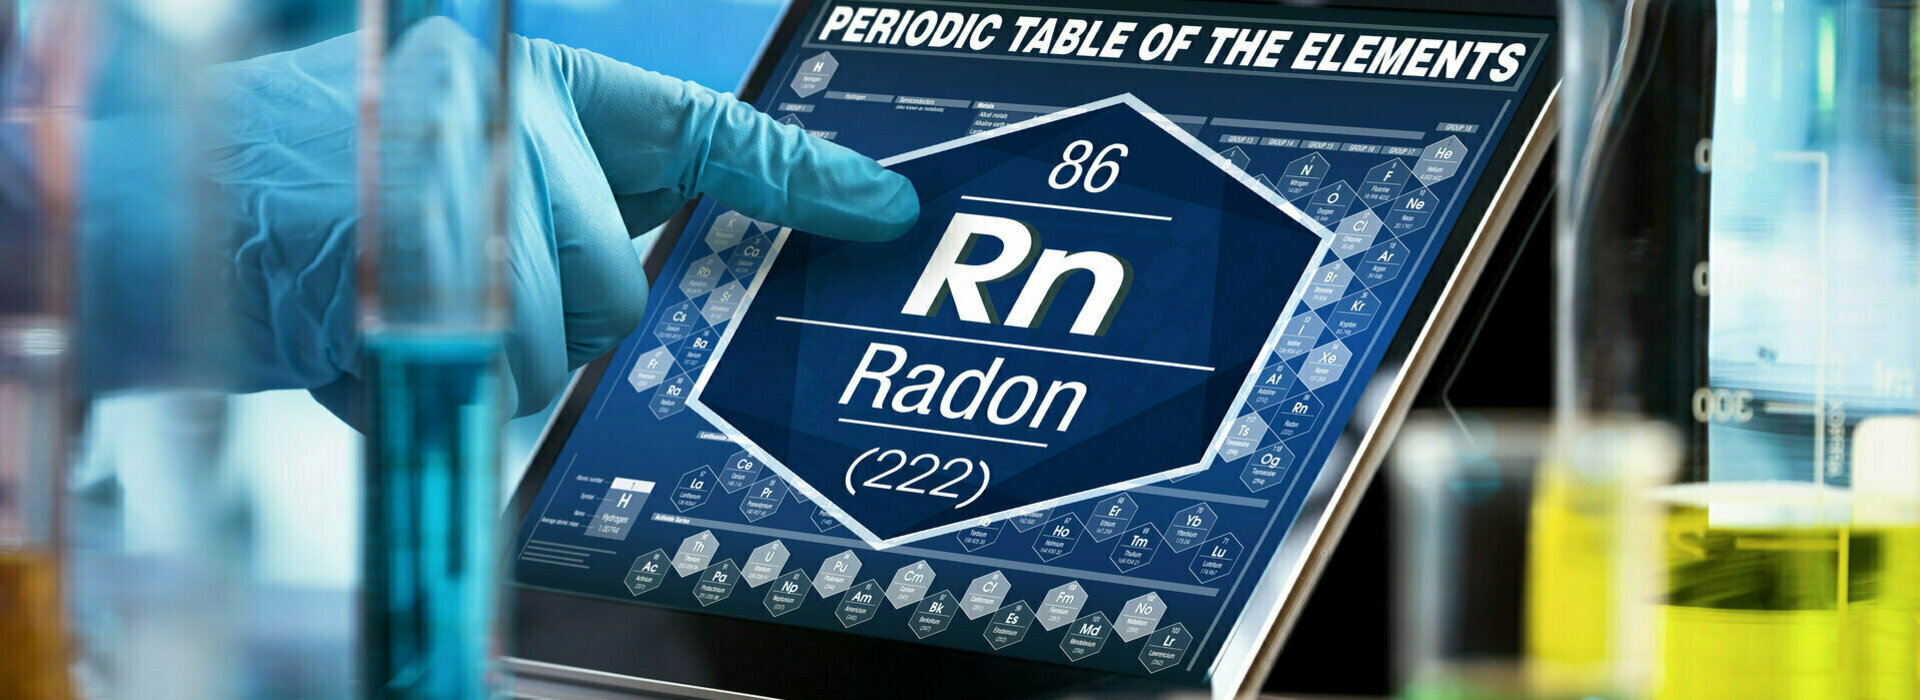 Peut-on réduire la concentration en radon dans un local ?